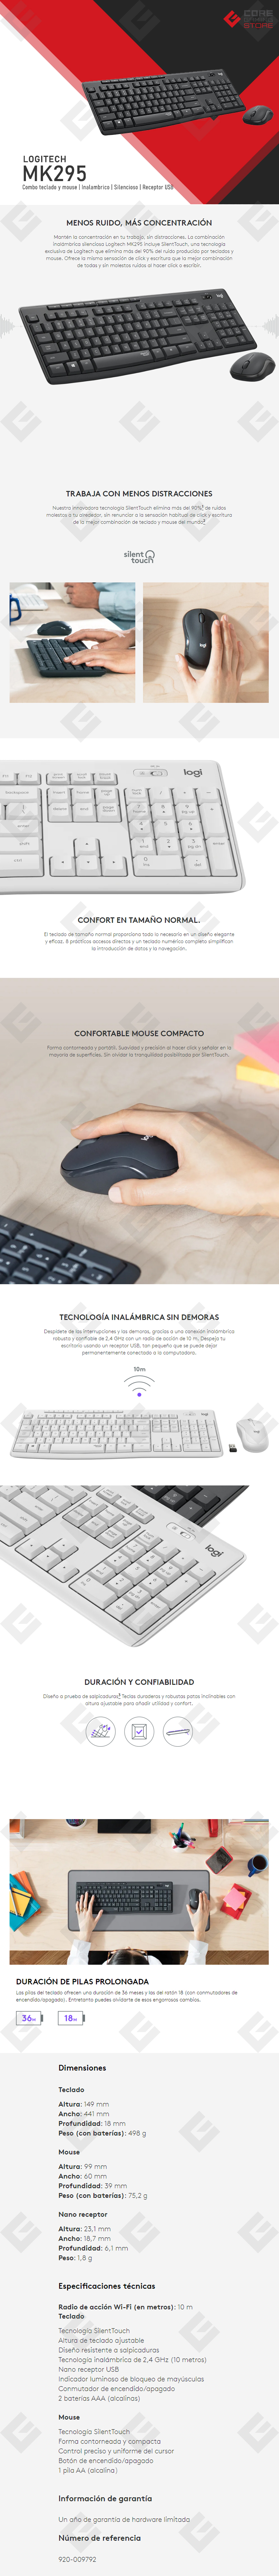 Teclado Español y Mouse Logitech MK295 Inalámbrico